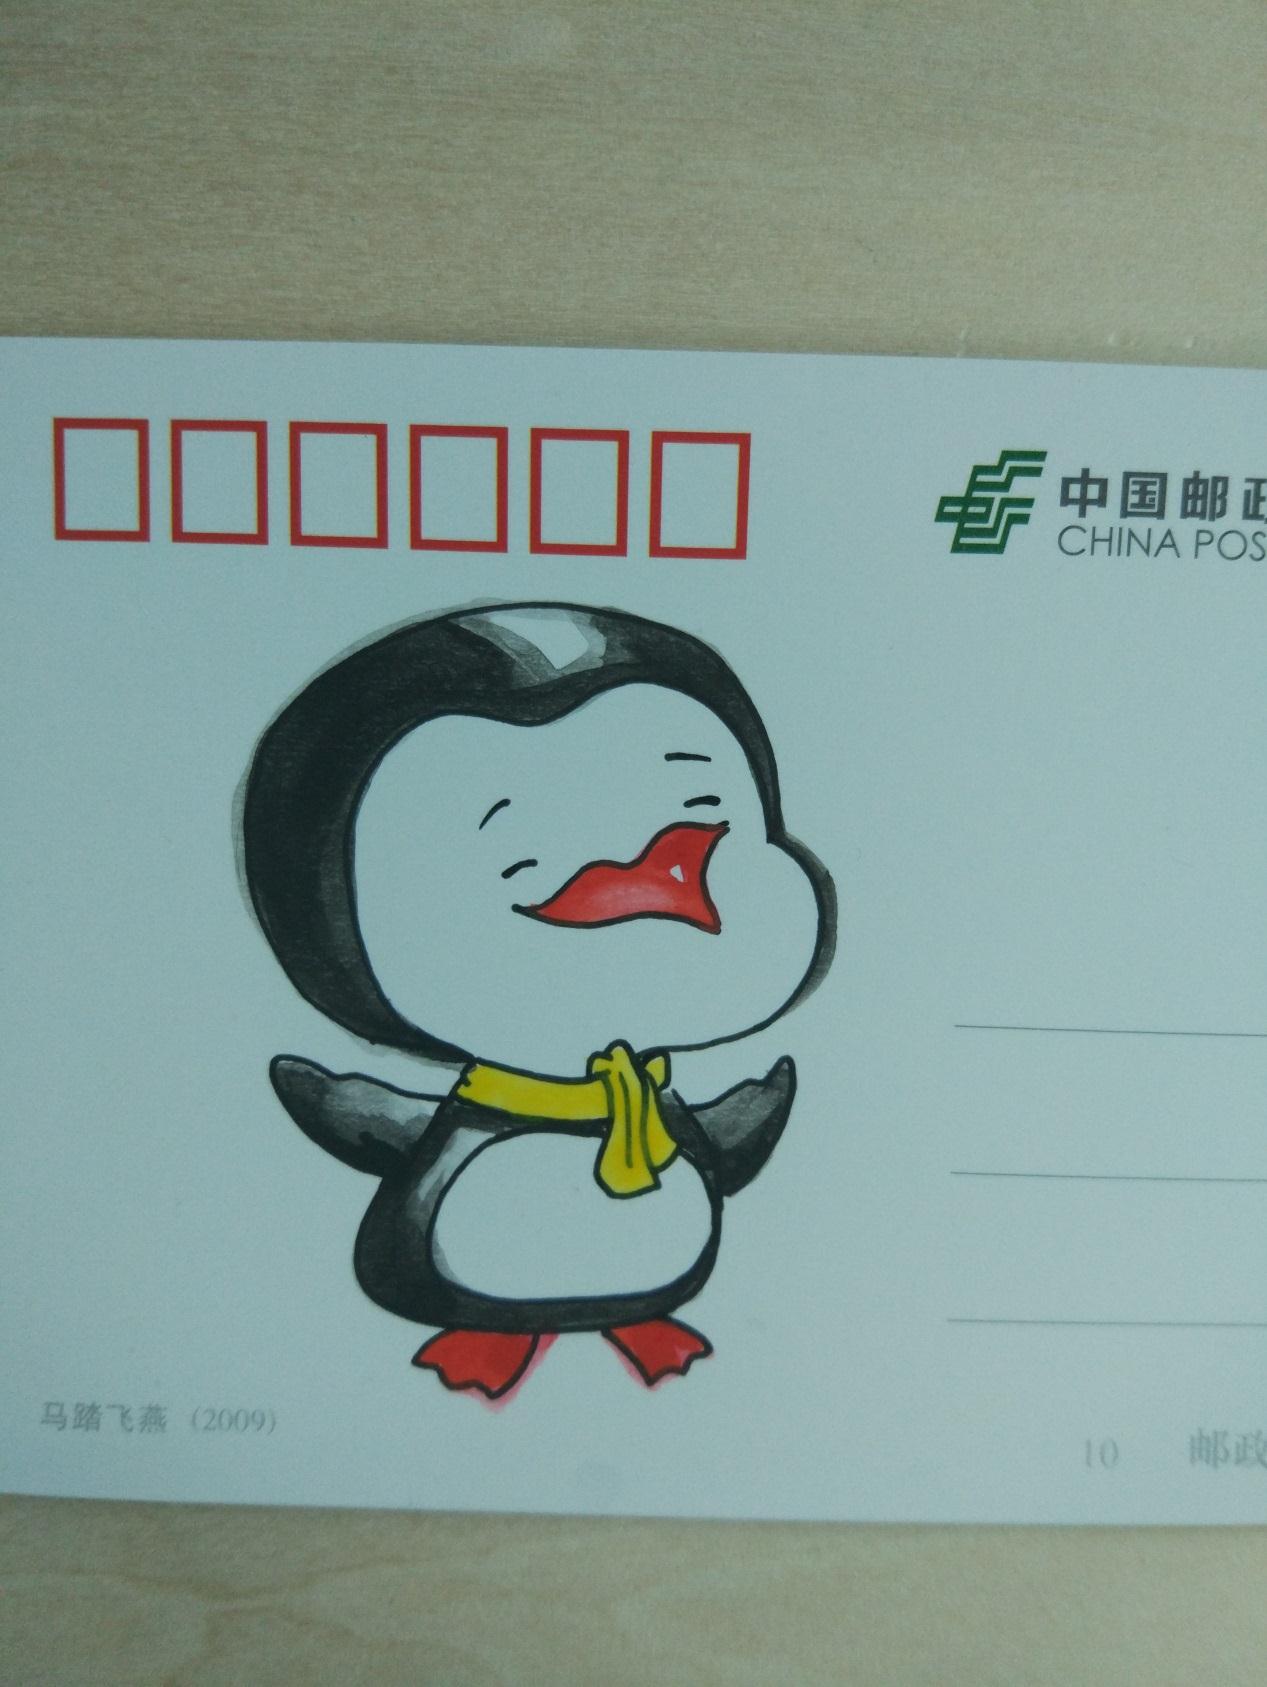 原创简单的DIY小制作 教你用空白明信片绘制小企鹅